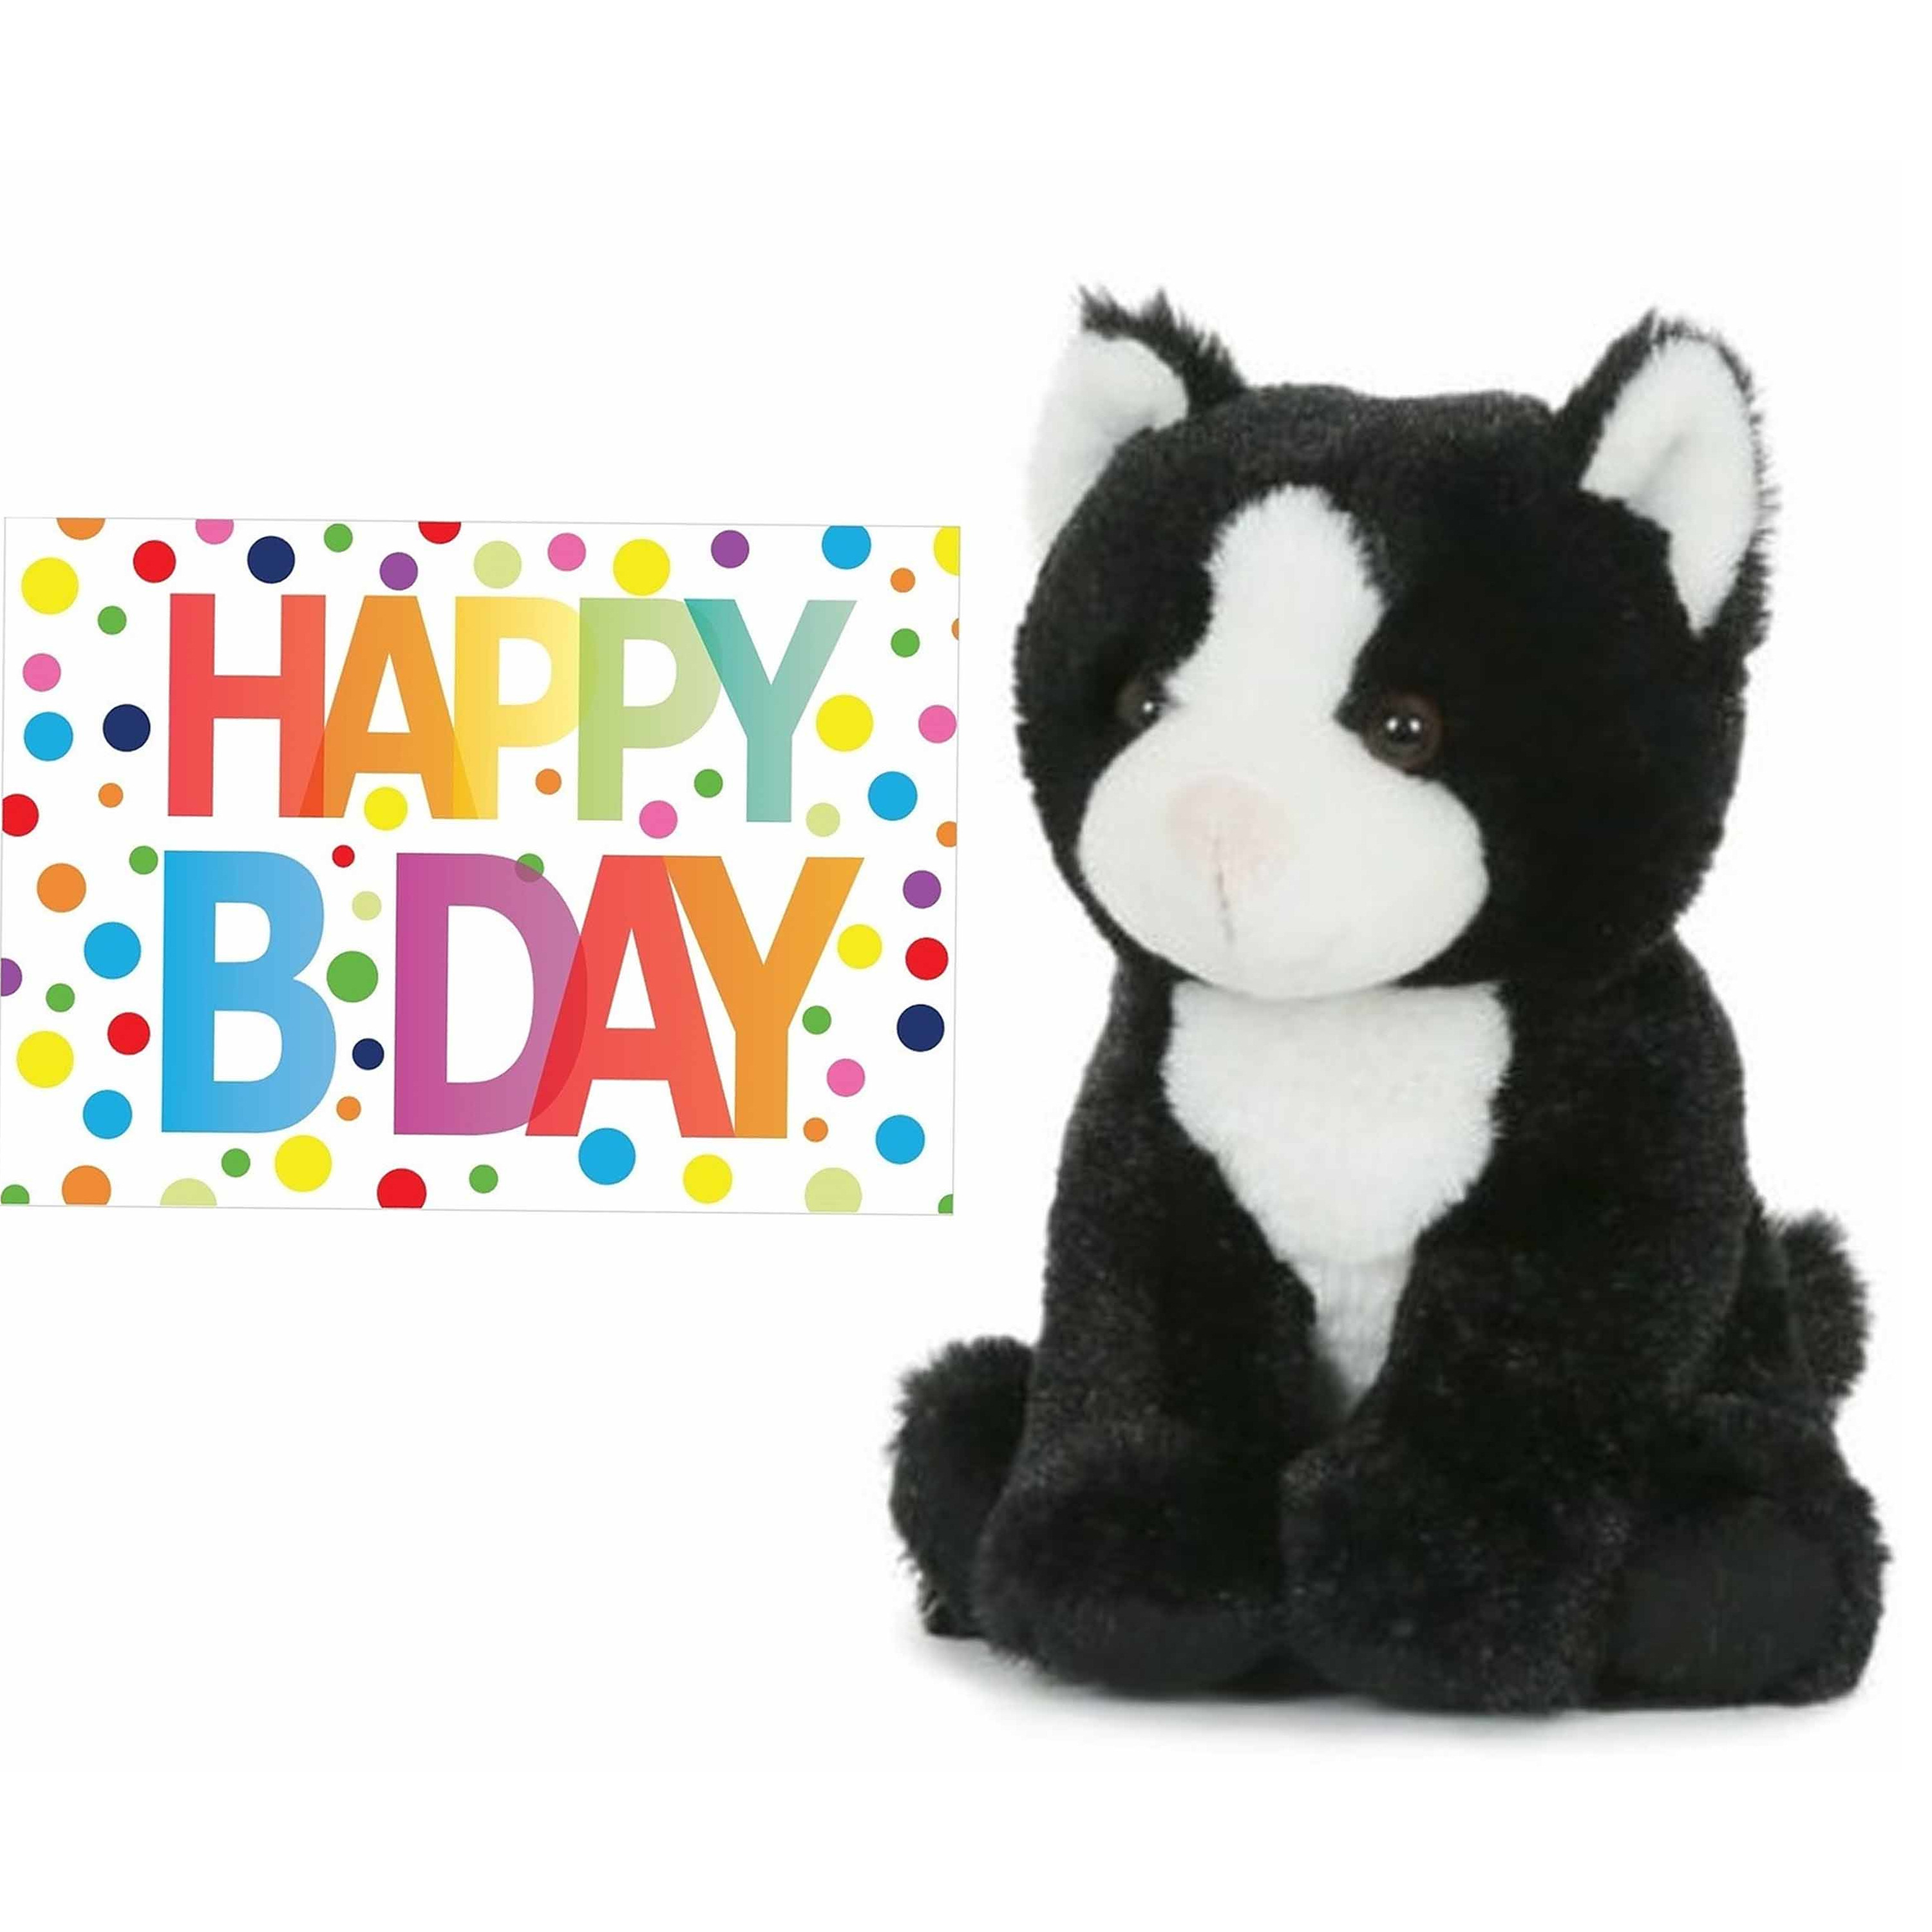 Semo Pluche knuffel kat/poes zwart/wit 18 cm met A5-size Happy Birthday wenskaart -